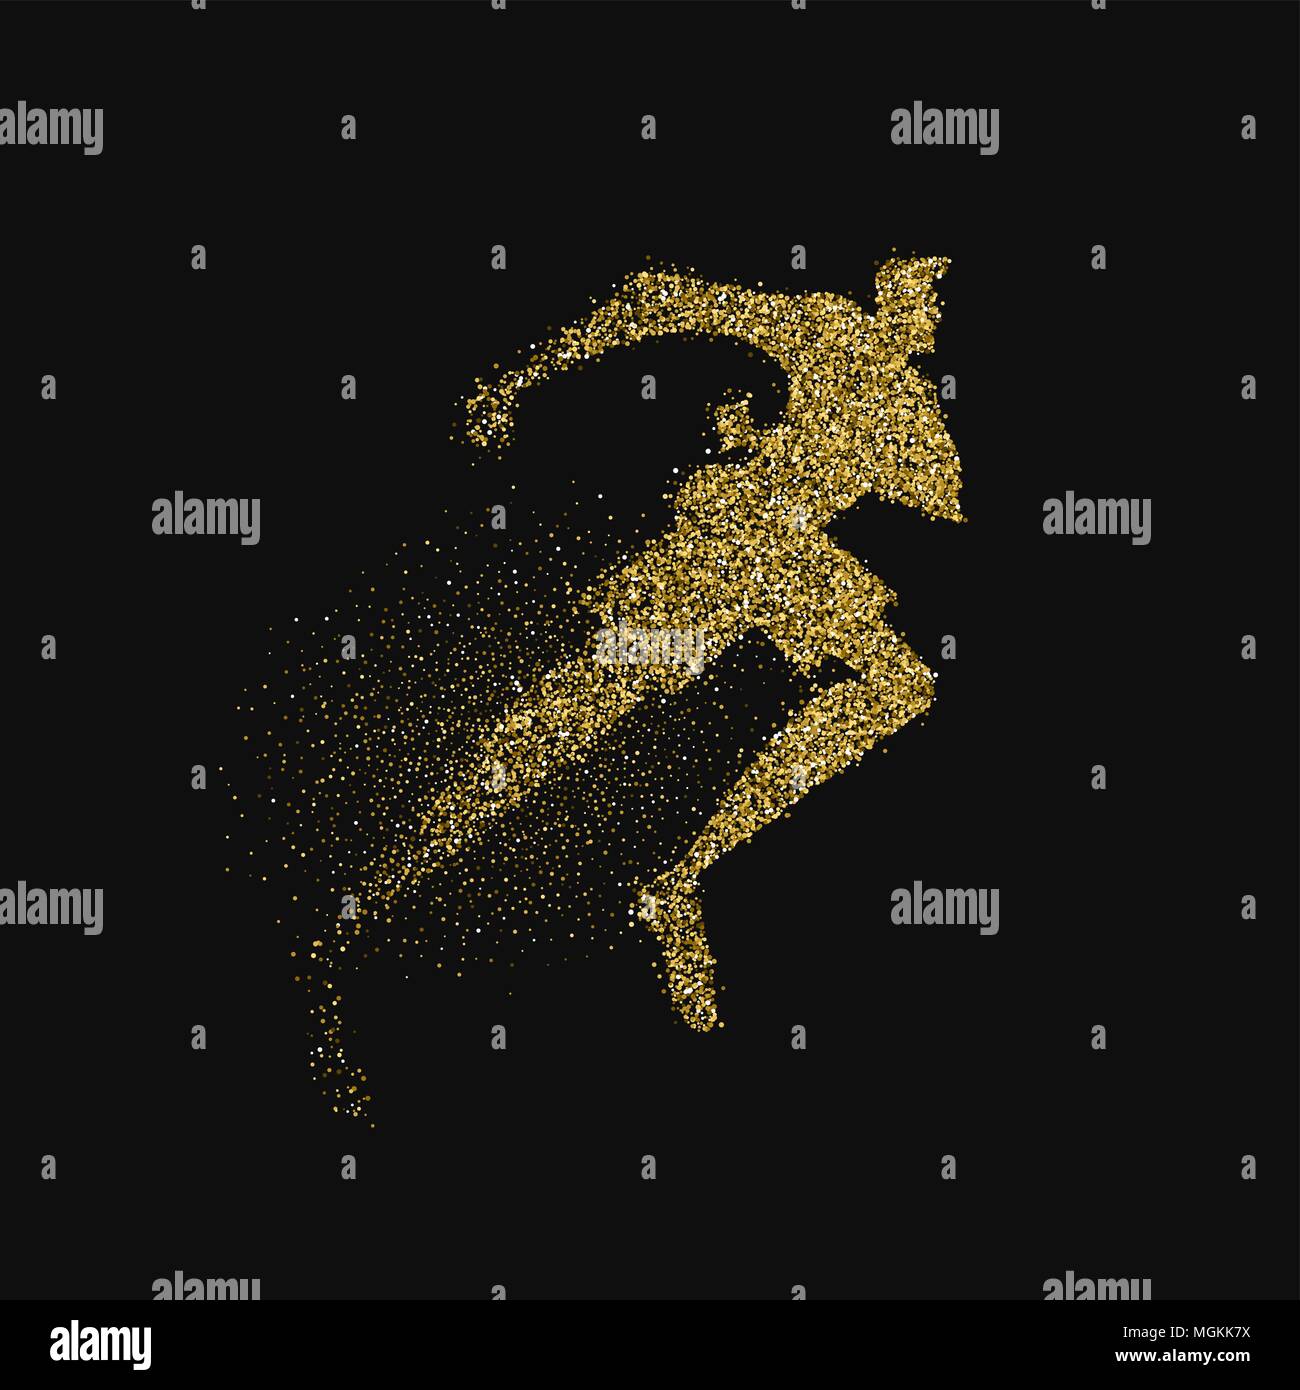 Runner Silhouette aus gold Glitter splash auf schwarzem Hintergrund. Goldene Farbe Mann laufen rennen. EPS 10 Vektor. Stock Vektor